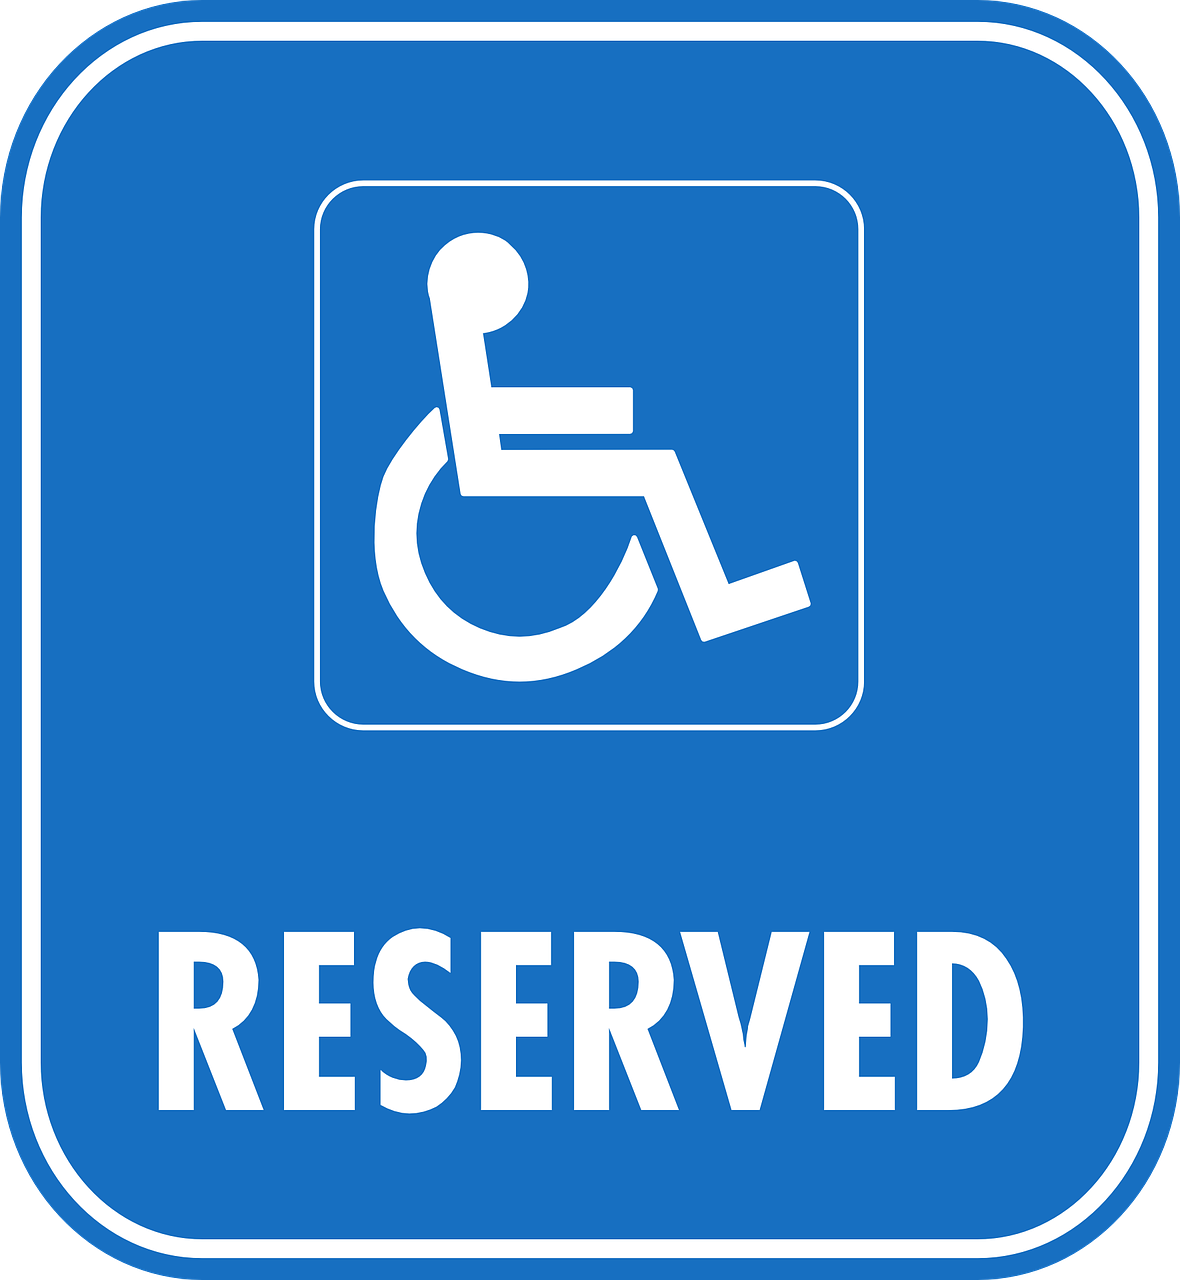 J.H. Zorgdiensten kosten instellingen gehandicaptenzorg verstandelijk gehandicapten